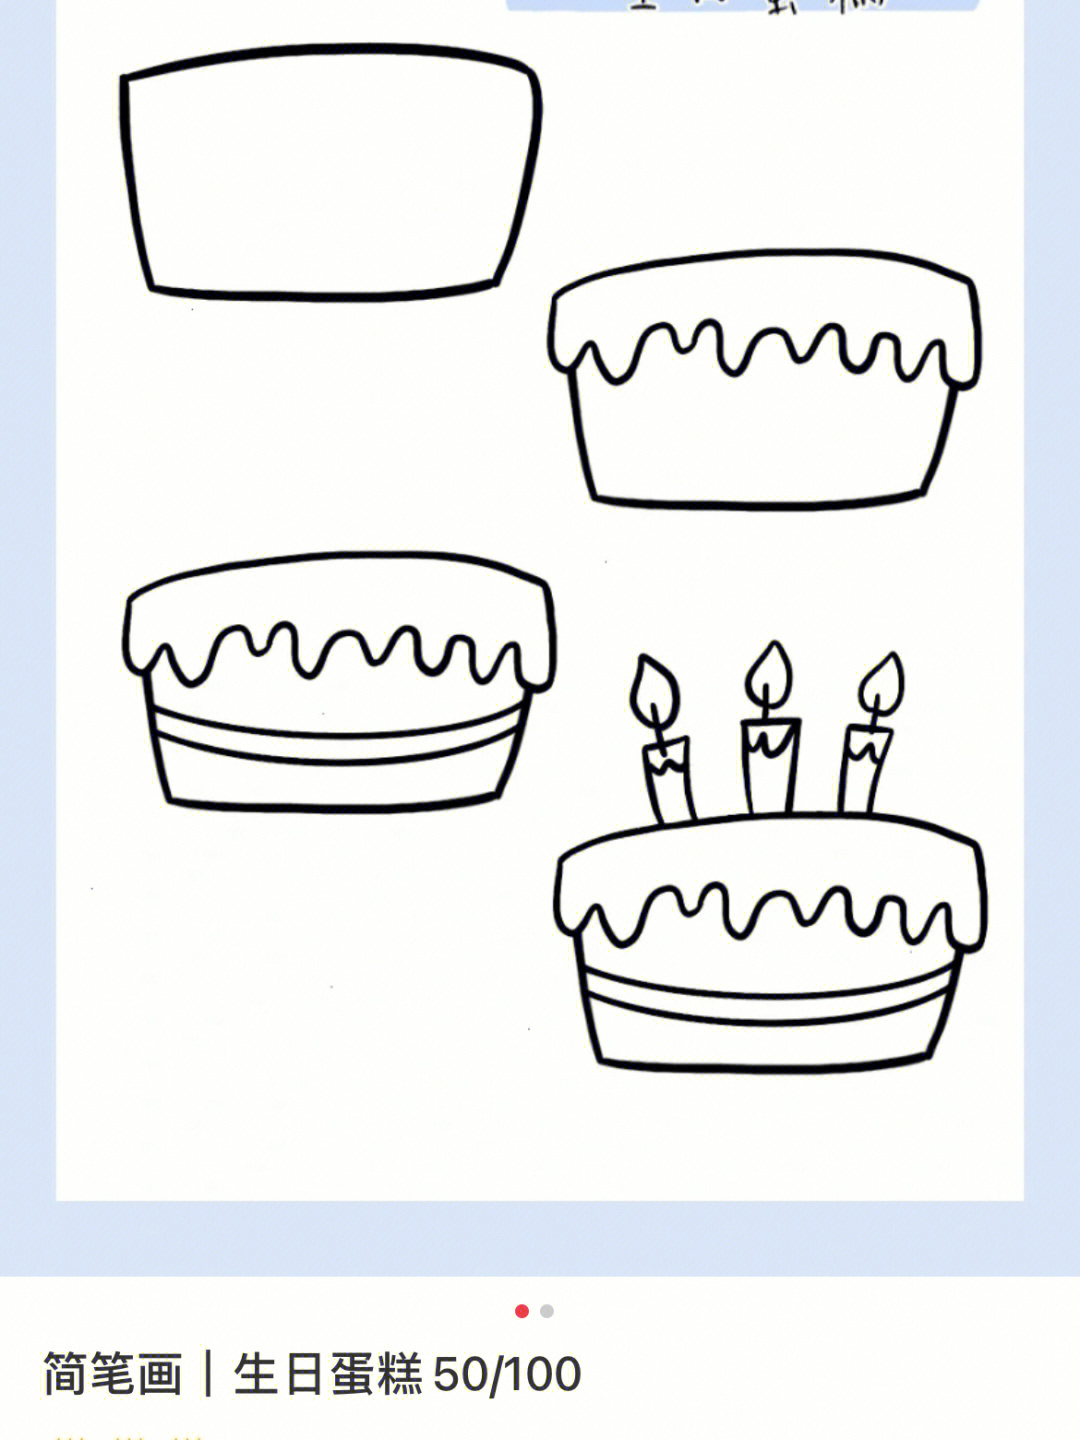 画生日蛋糕画法图片